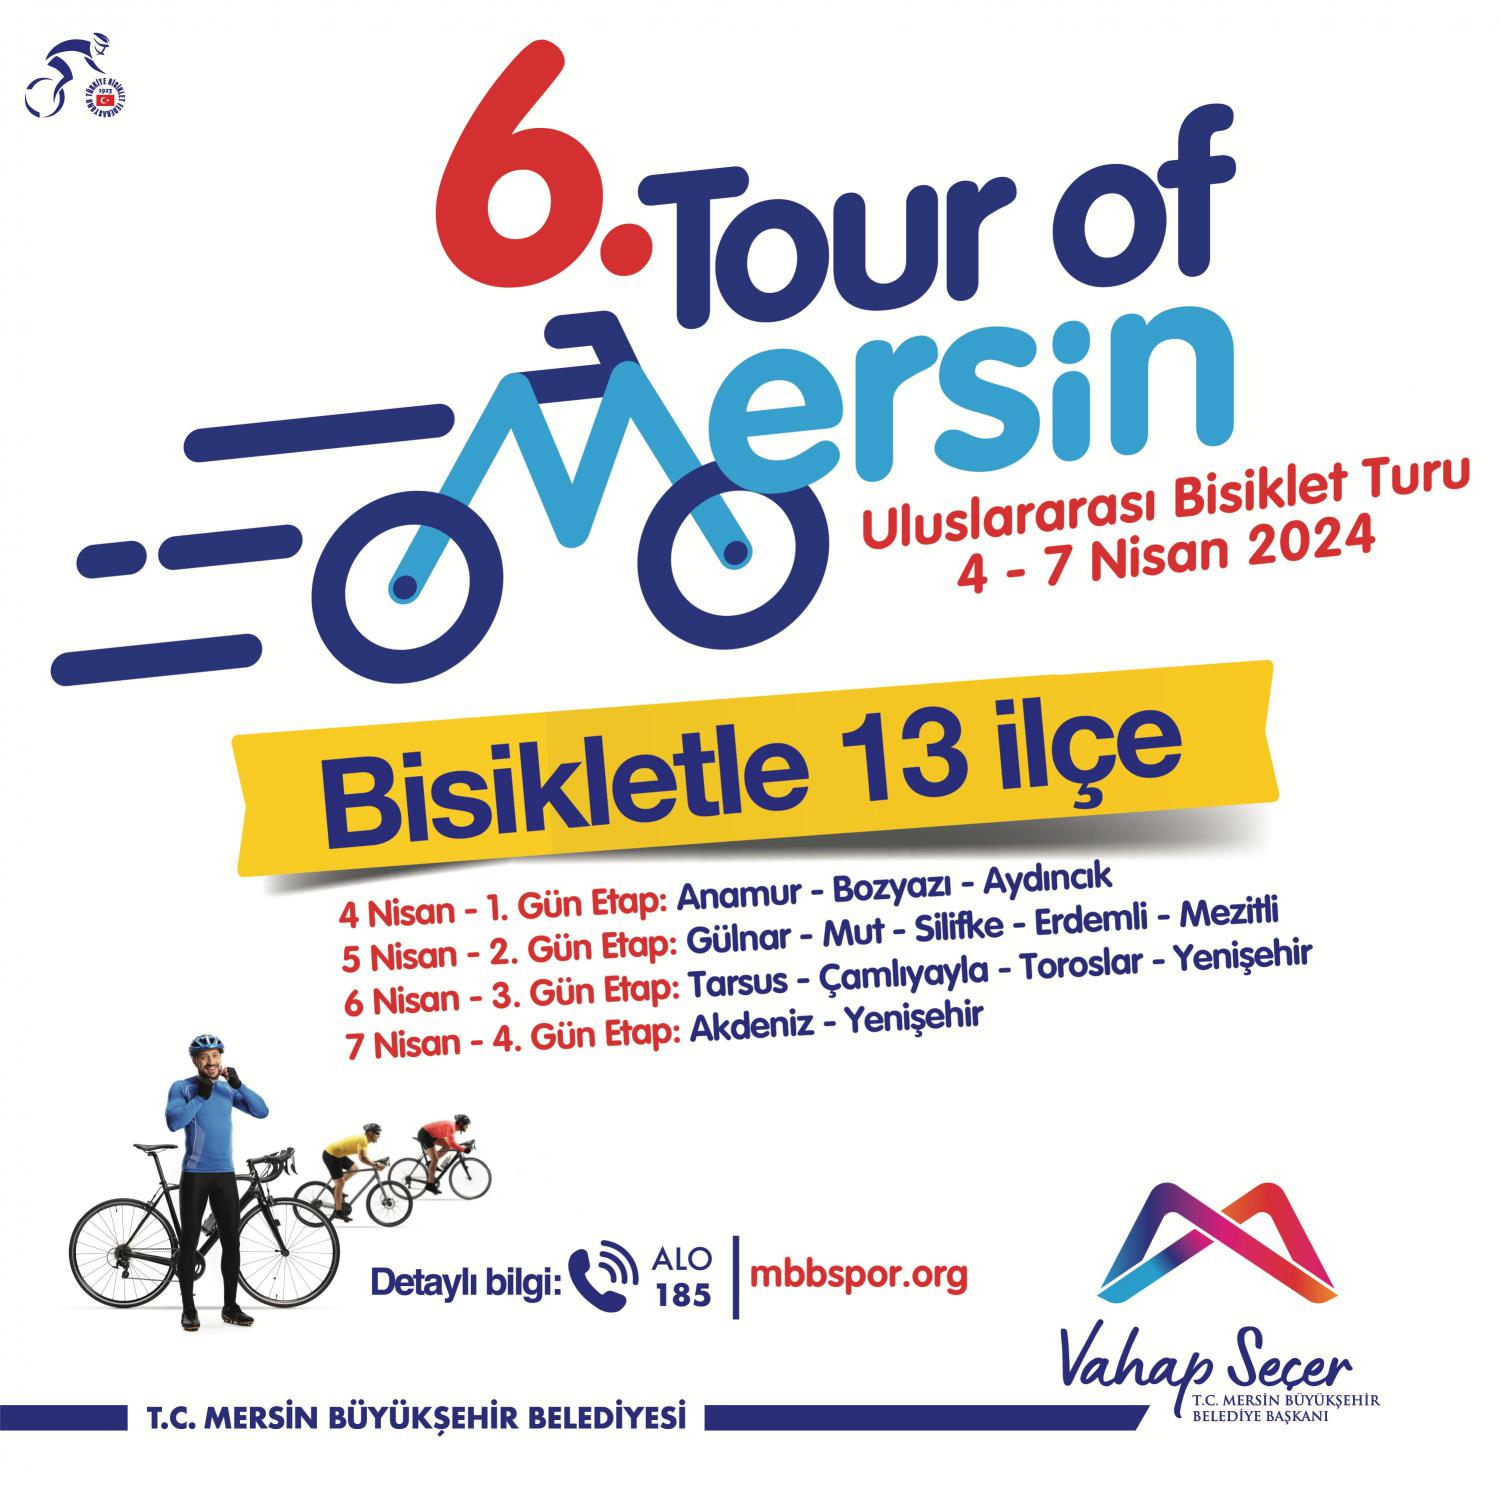 6. Tour of Mersin Uluslararası Bisiklet Turu'nda buluşalım.